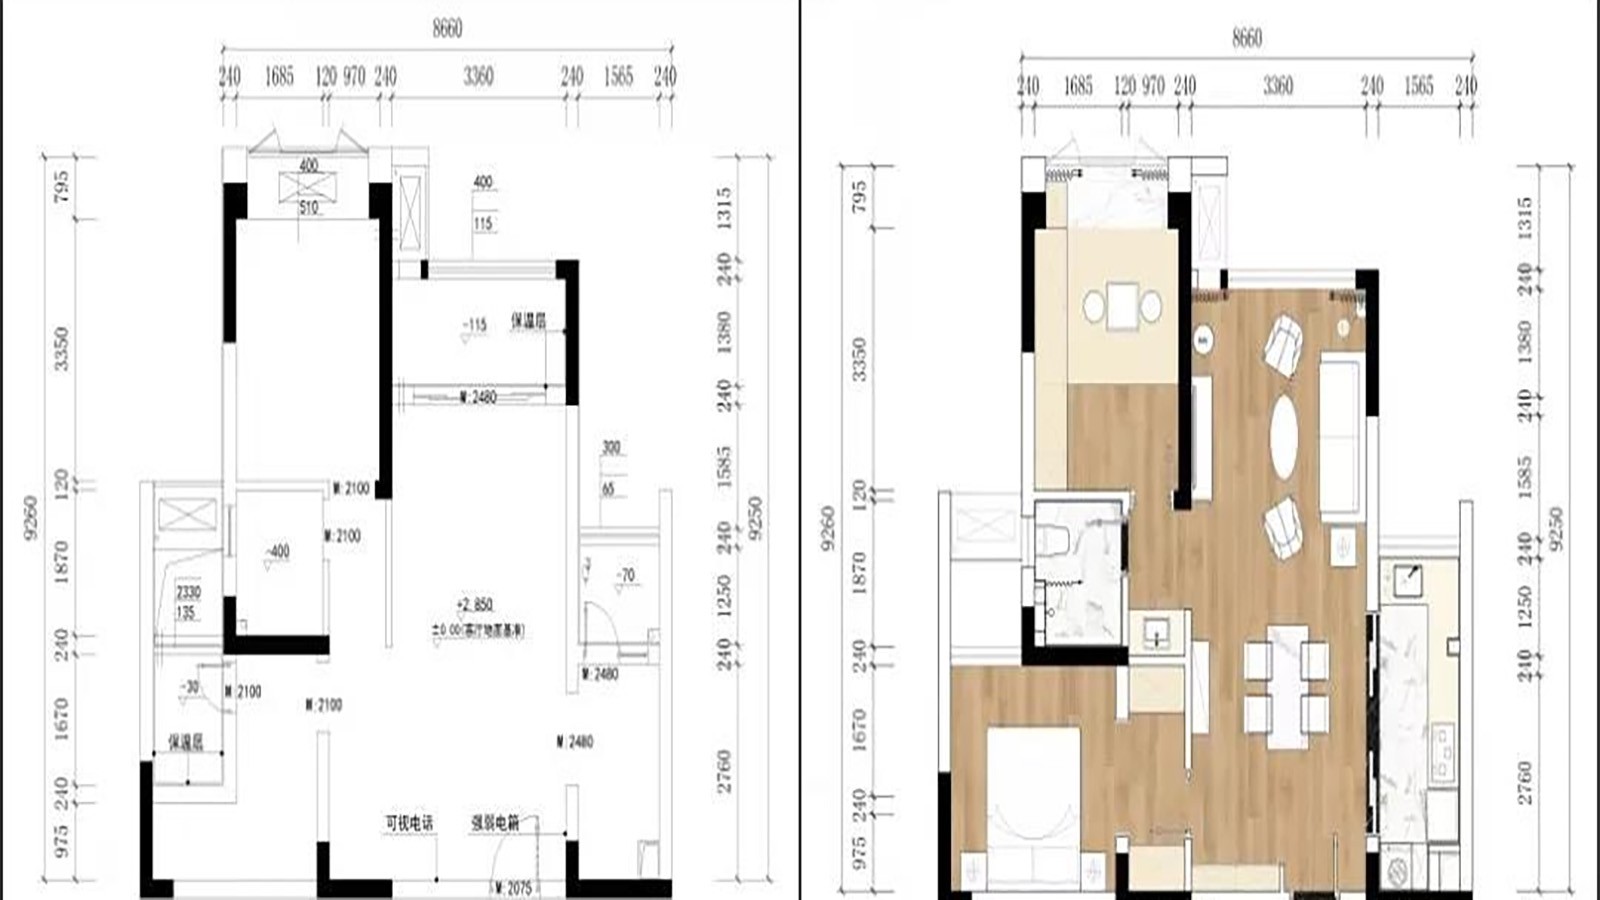 67现代两房装修效果图,陈先生的新家装修案例效果图-美广网